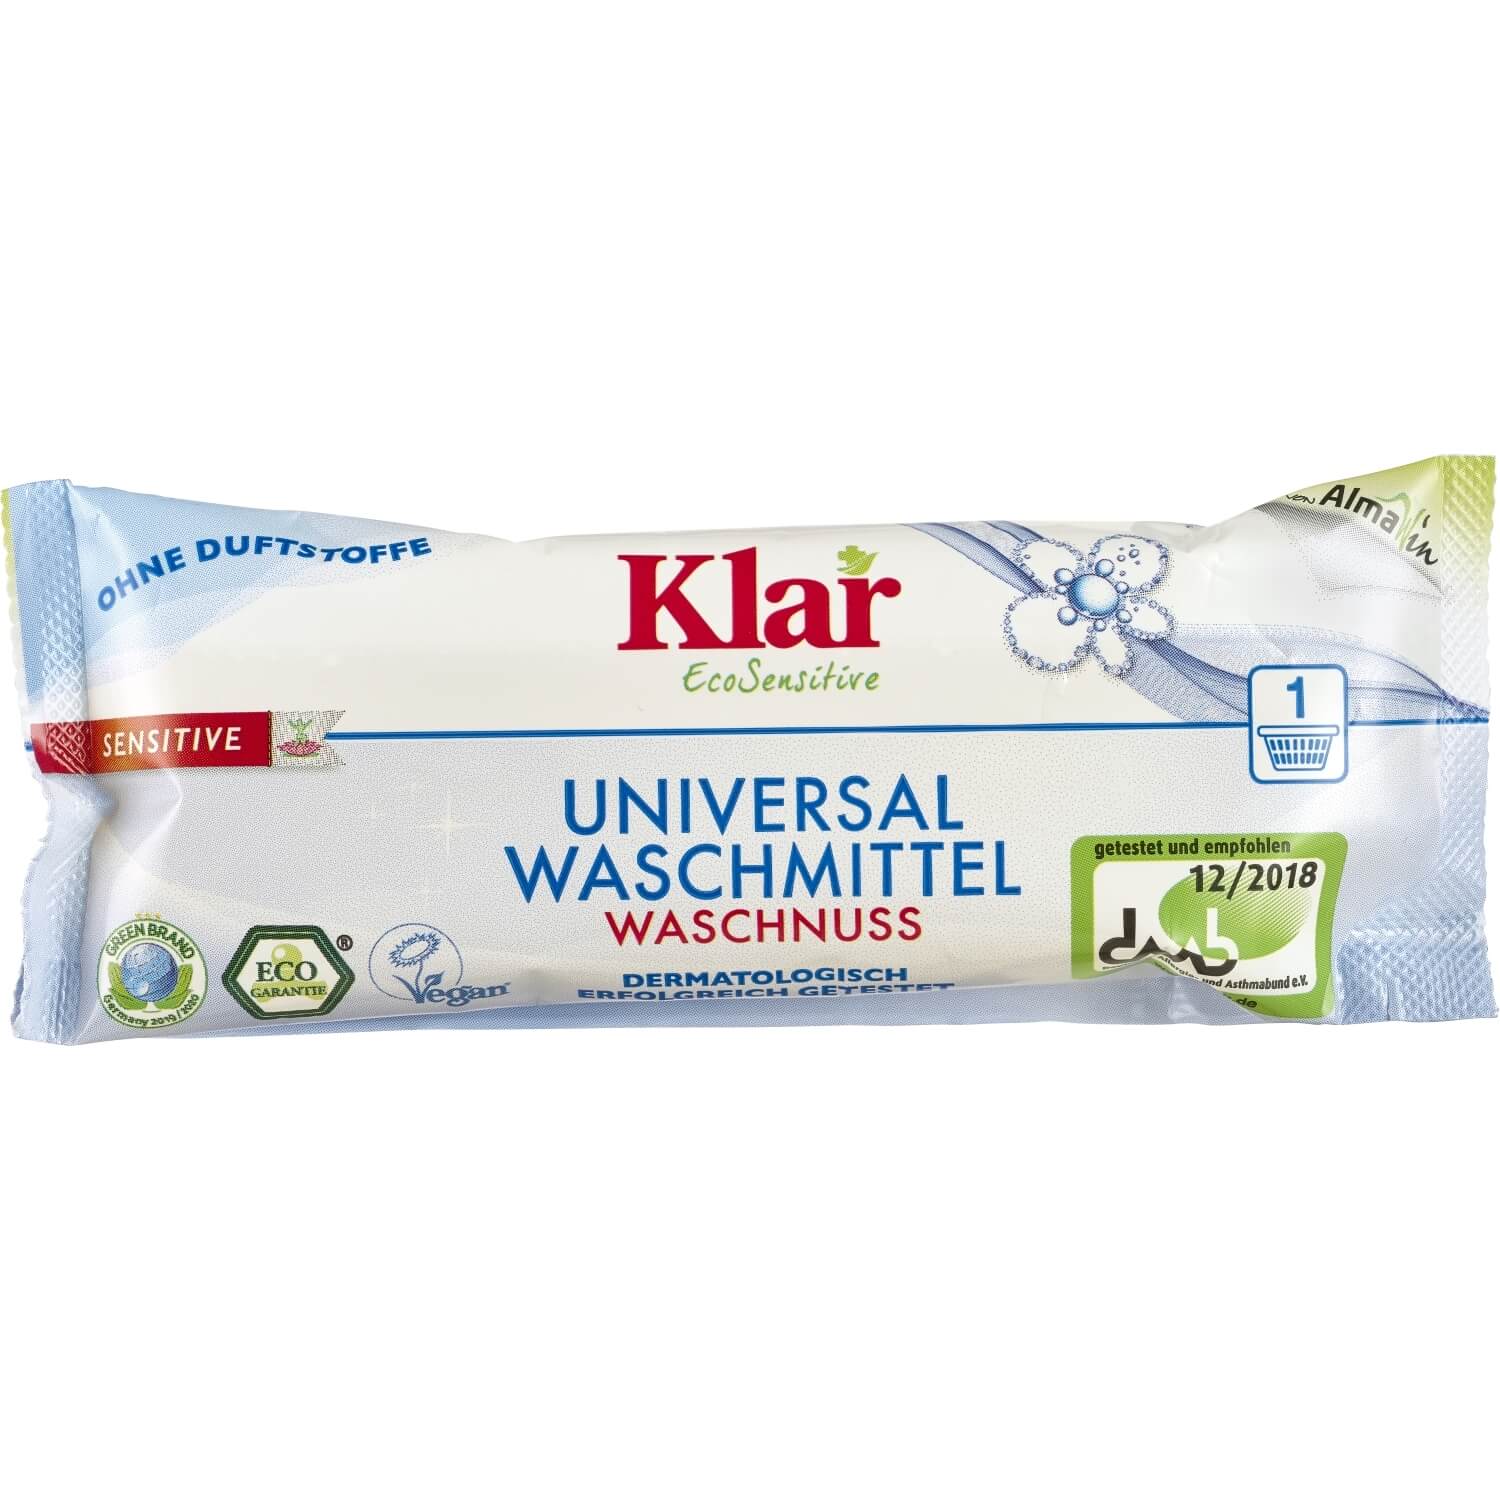 Klar Universal Waschmittel Waschnuss, 45 ml